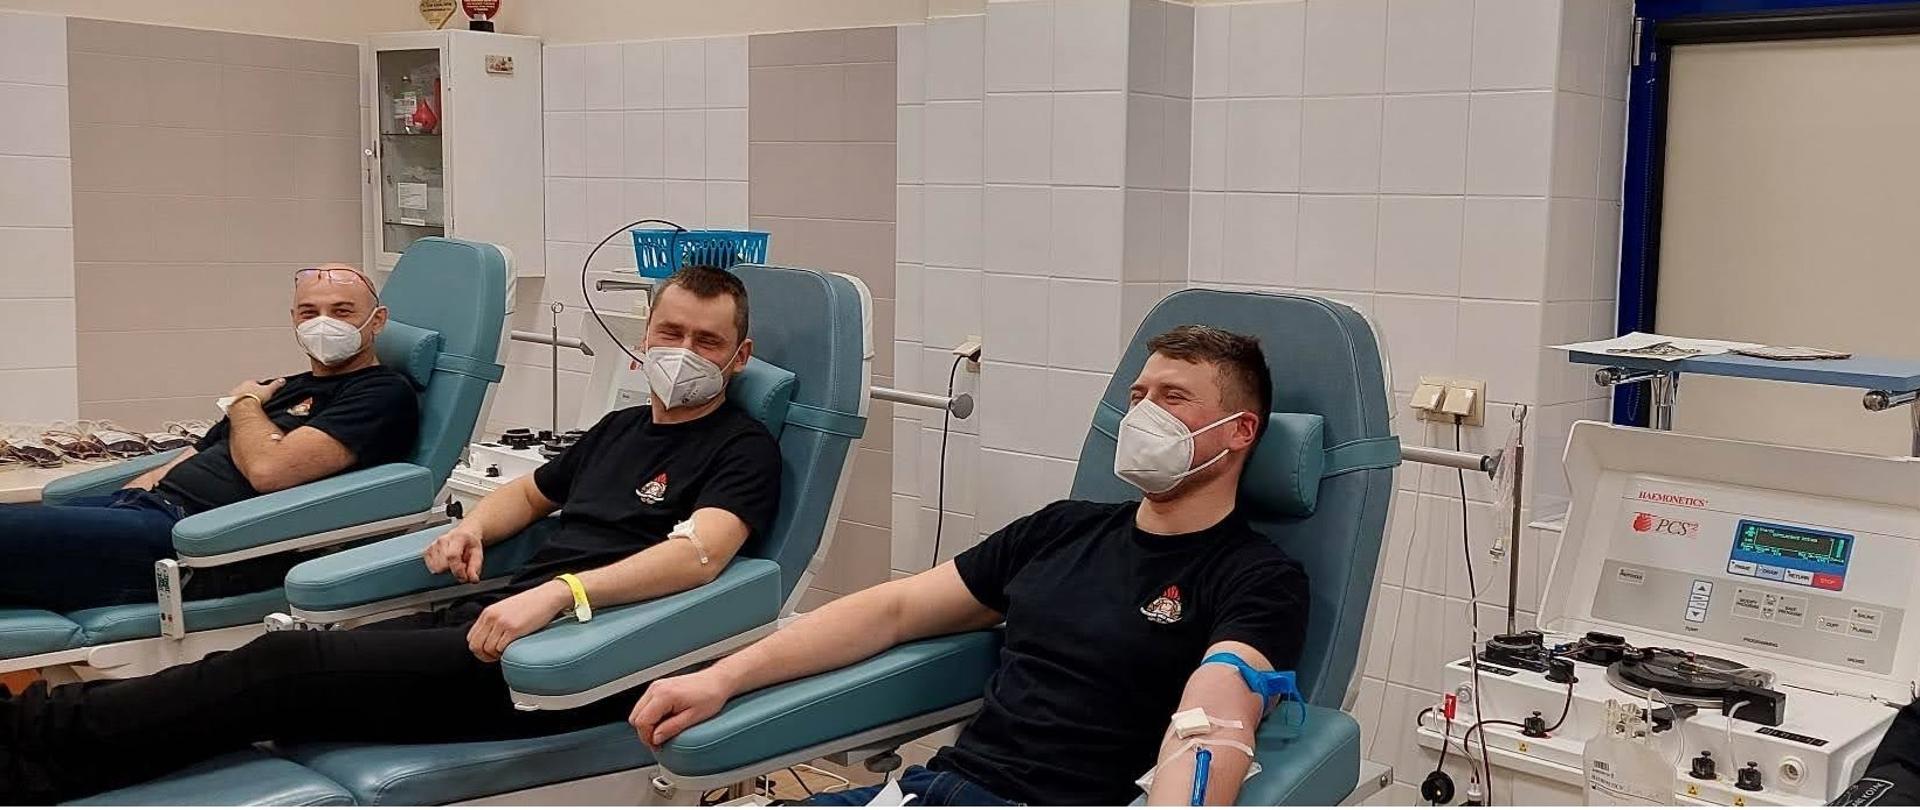 Strażacy oddają krew w ramach akcji członków klubu honorowych dawców krwi przy Komendzie Powiatowej PSP w Krotoszynie. Na zdjęciu czwórka strażaków w siedzibie Regionalnego Centrum Krwiodawstwa i Krwiolecznictwa w Krotoszynie oddaje krew. 